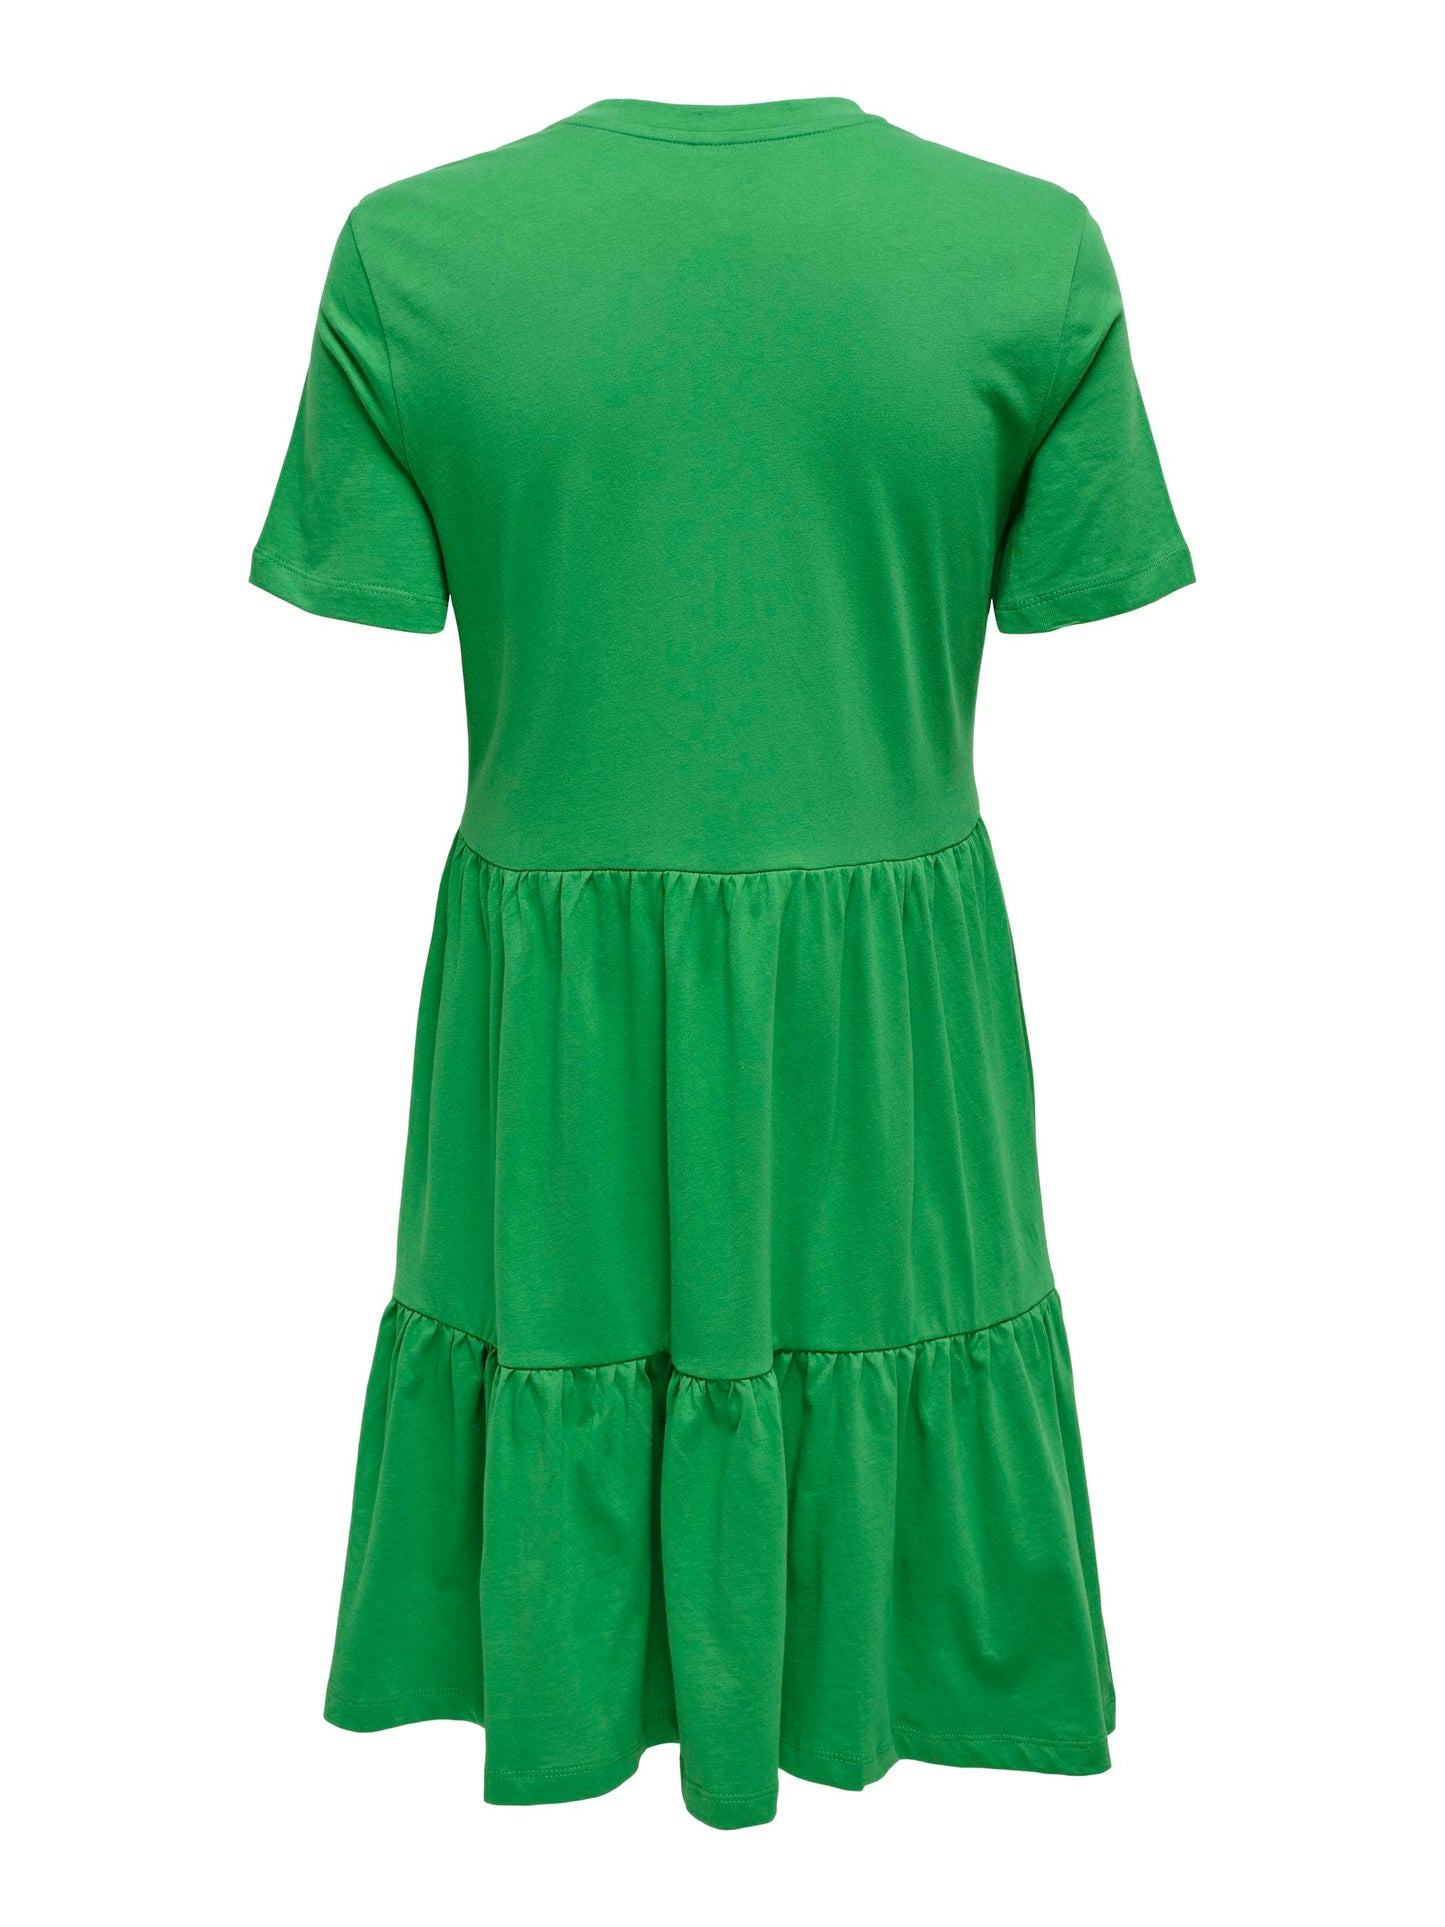 Green cotton dress